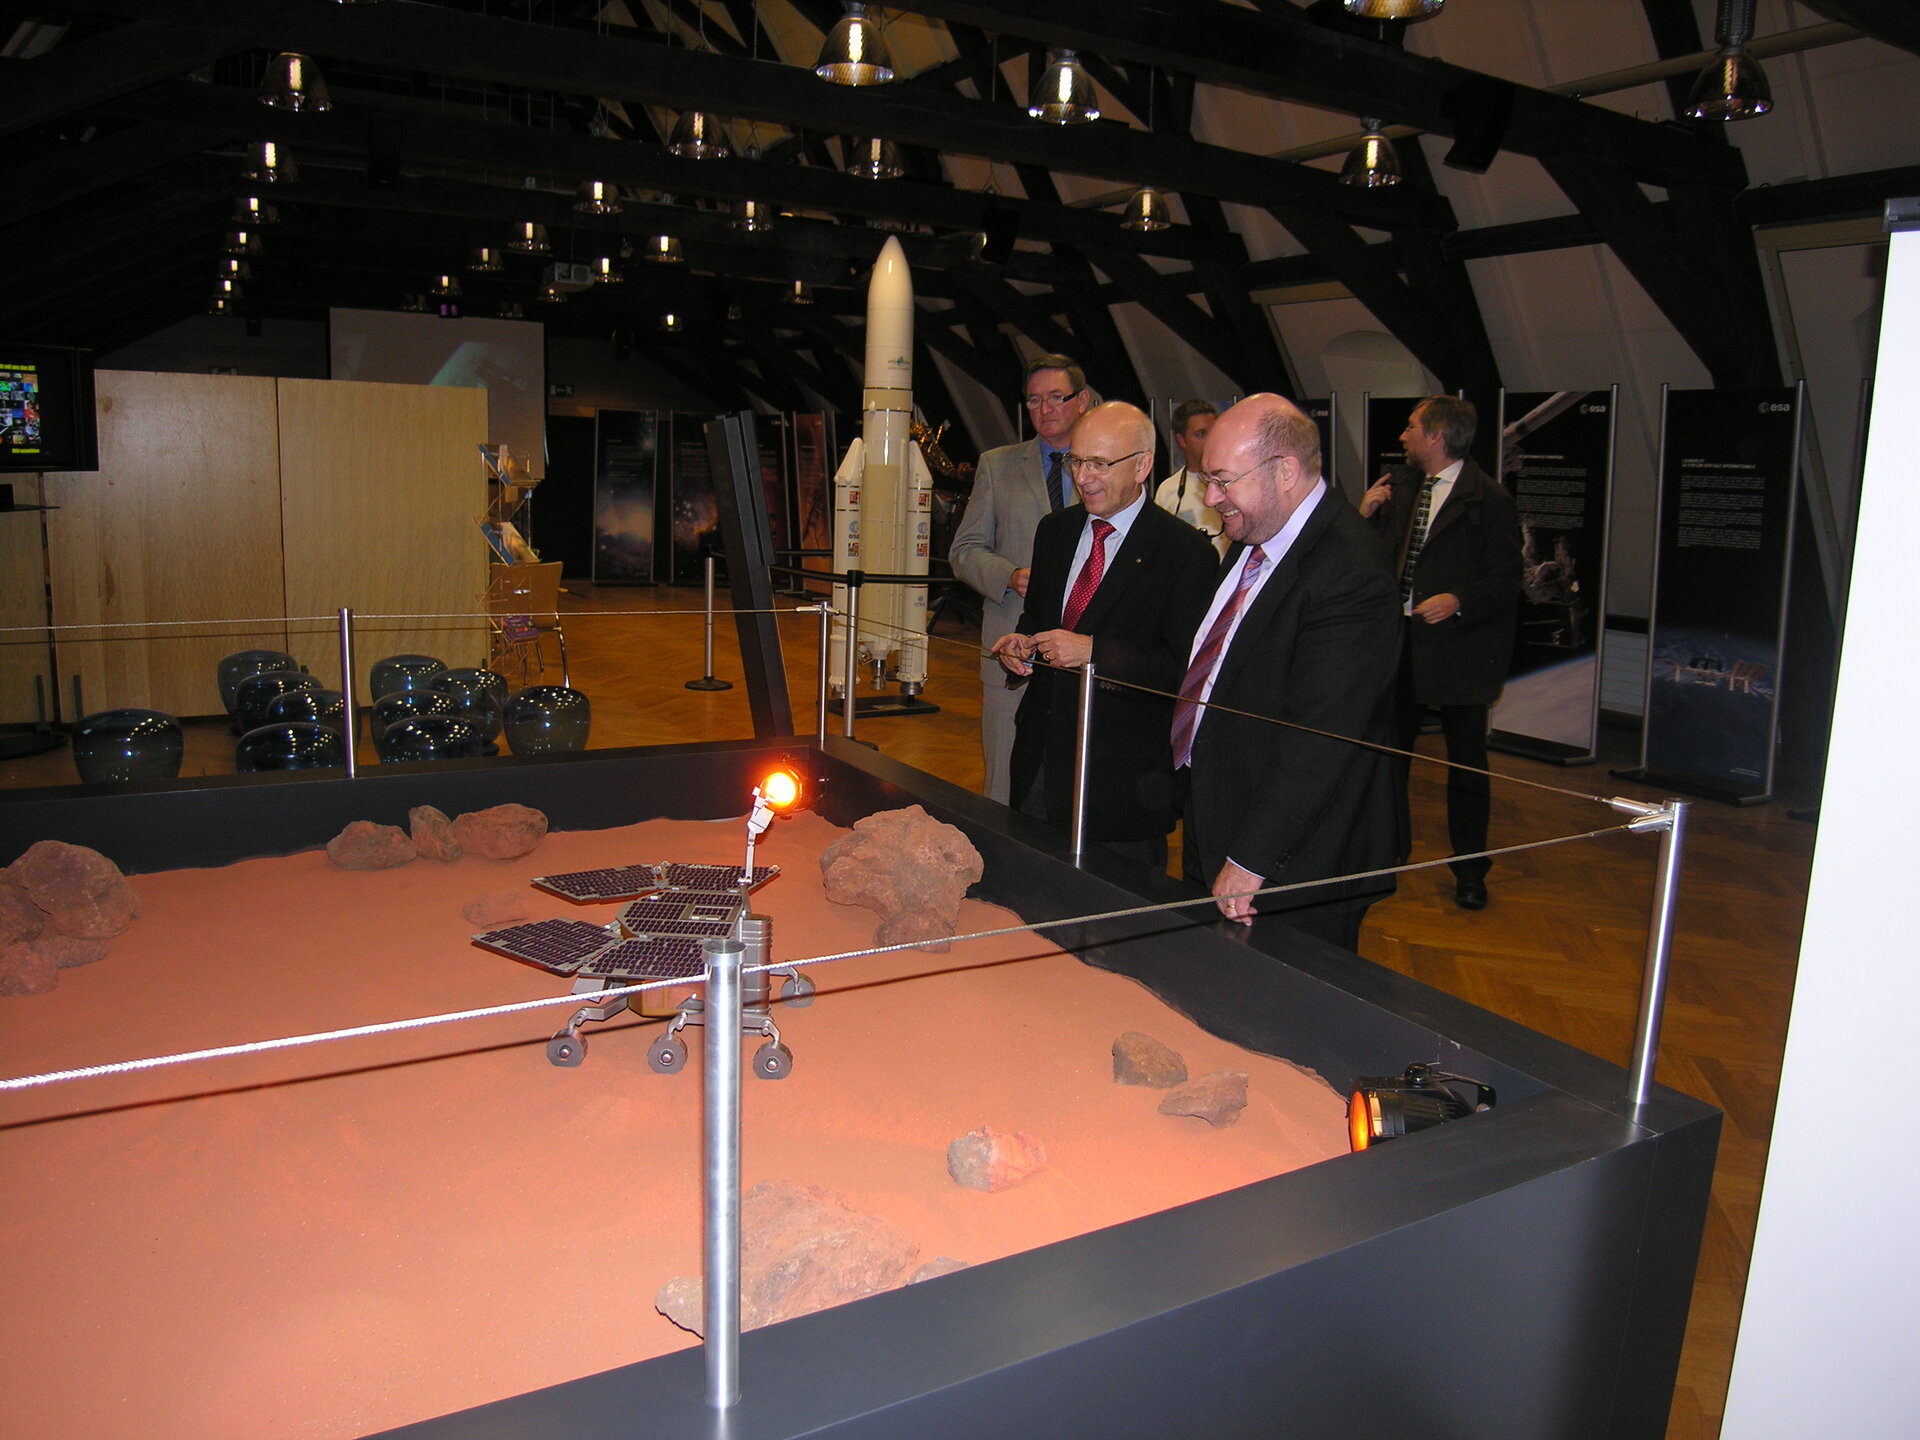 Inauguration du Science Festival le 12 novembre 2009 par M. le Ministre François Biltgen (à droite) et M. Fernand Wagner